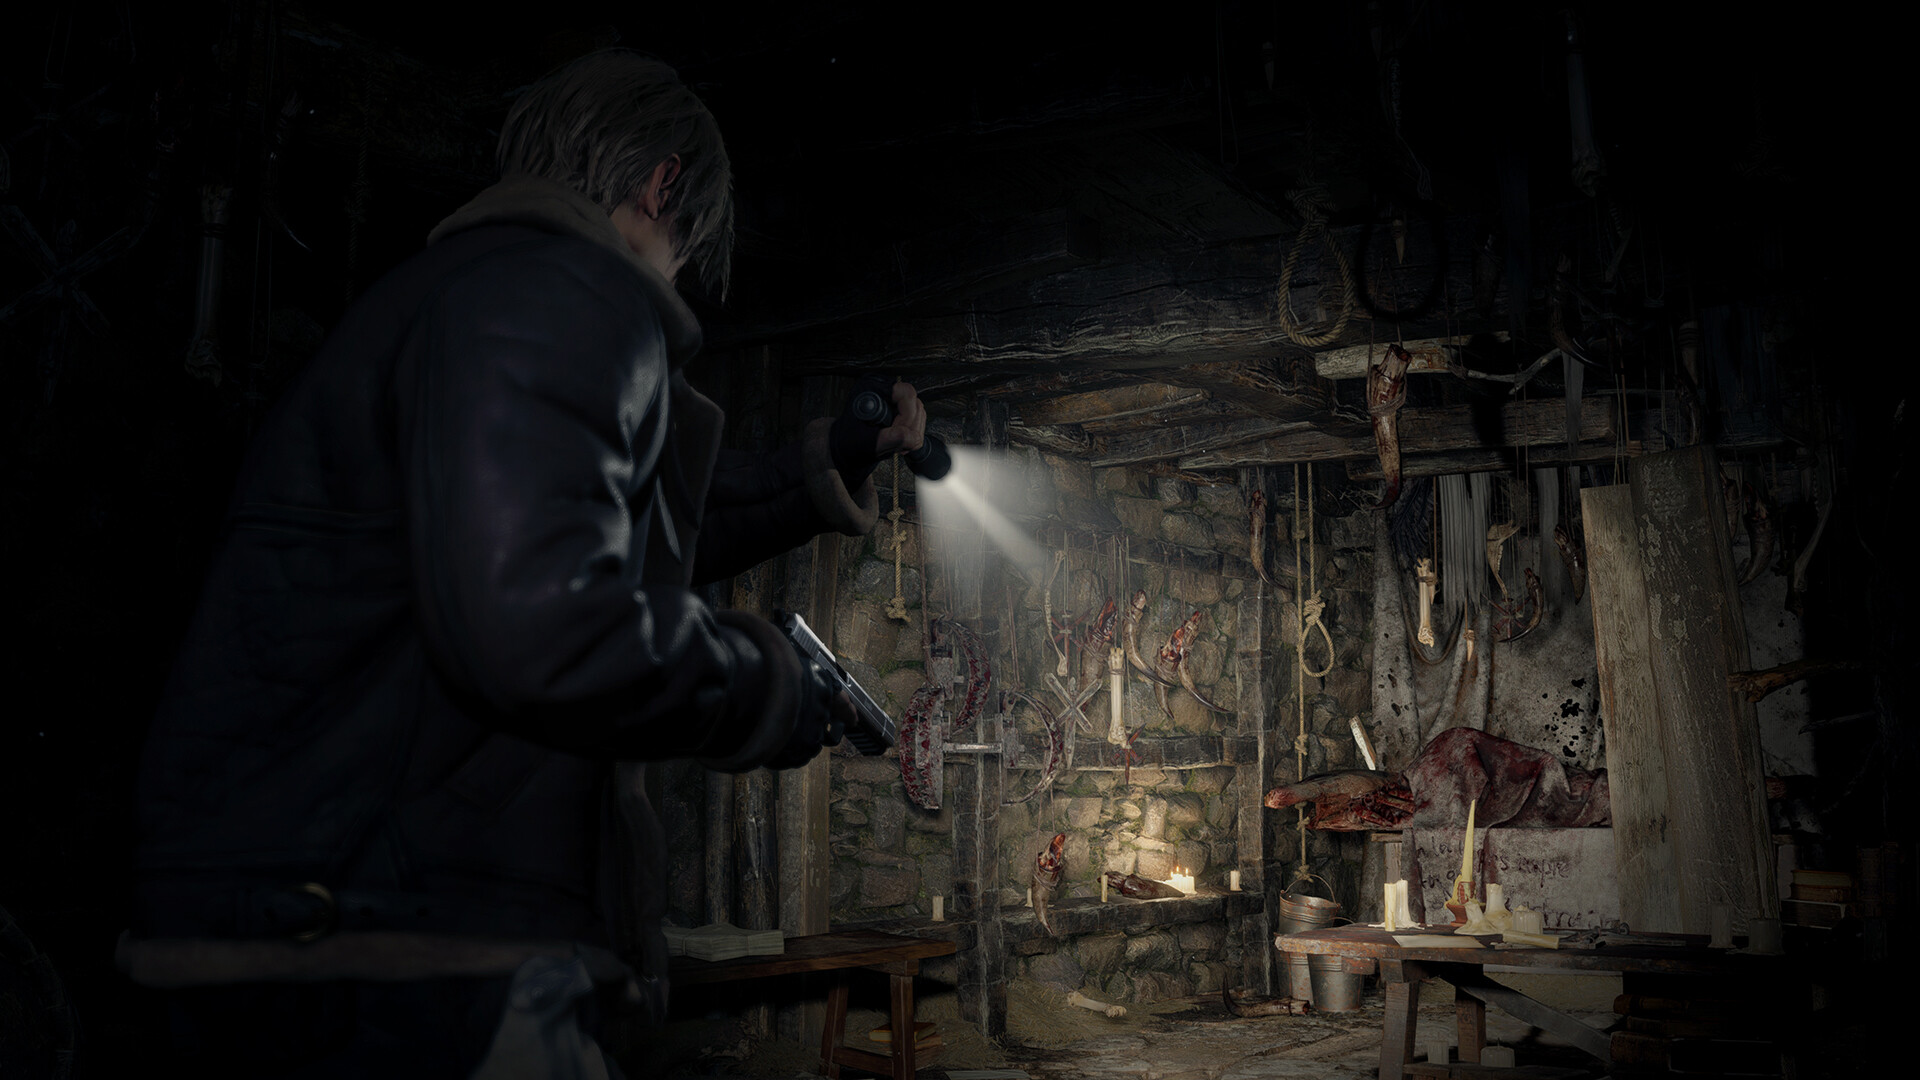 Resident Evil 4 (2023) Steam CD Key